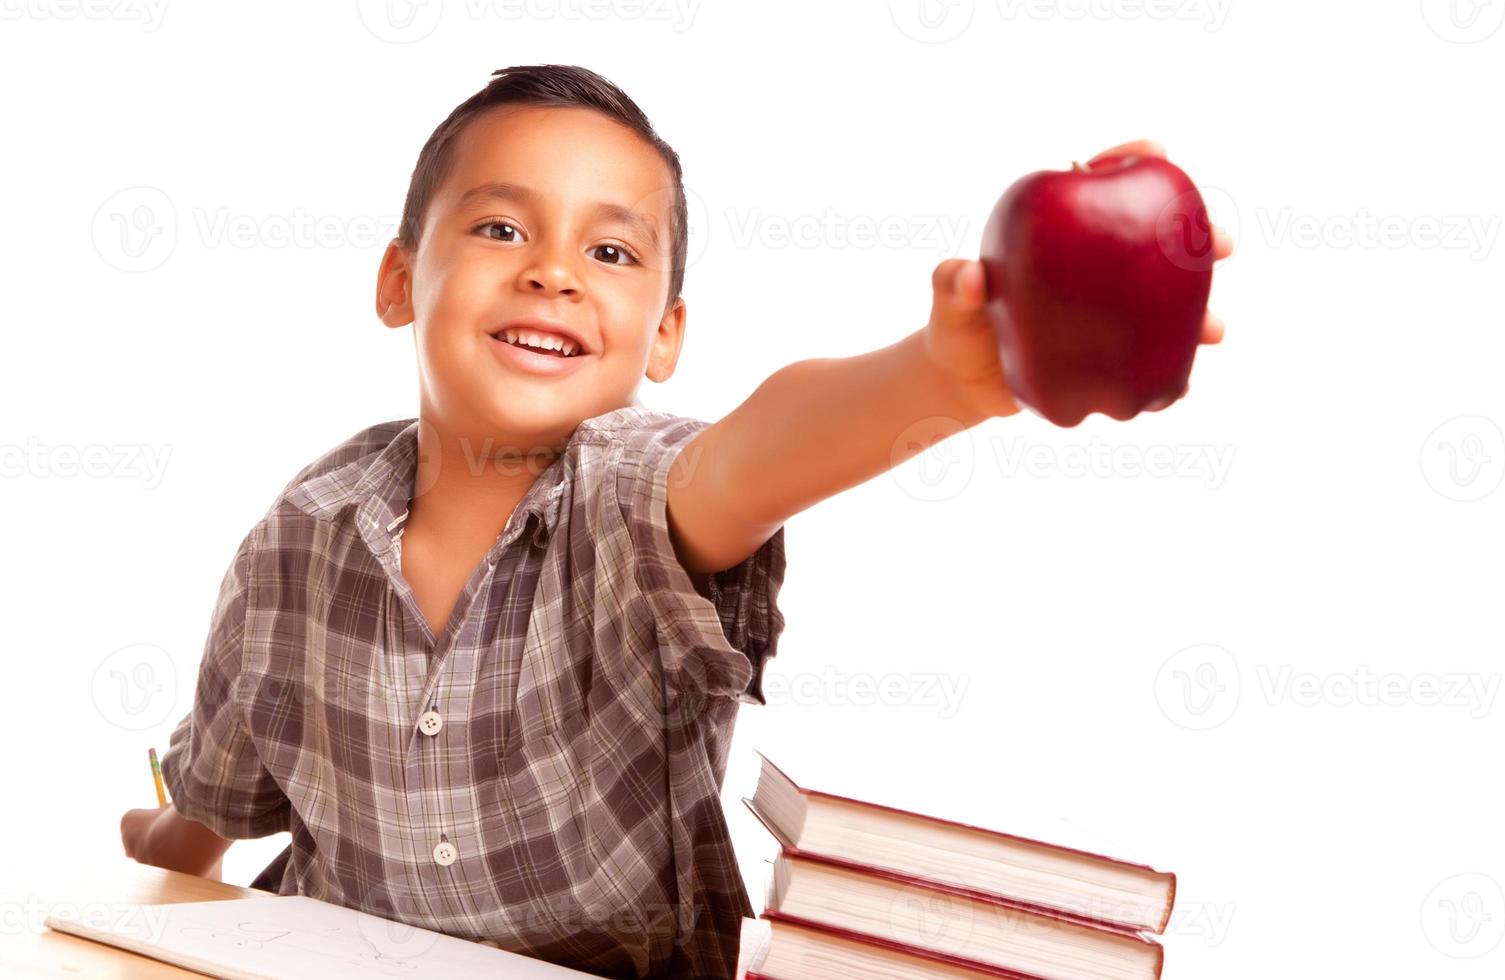 adorable garçon hispanique avec livres, pomme, crayon et papier photo